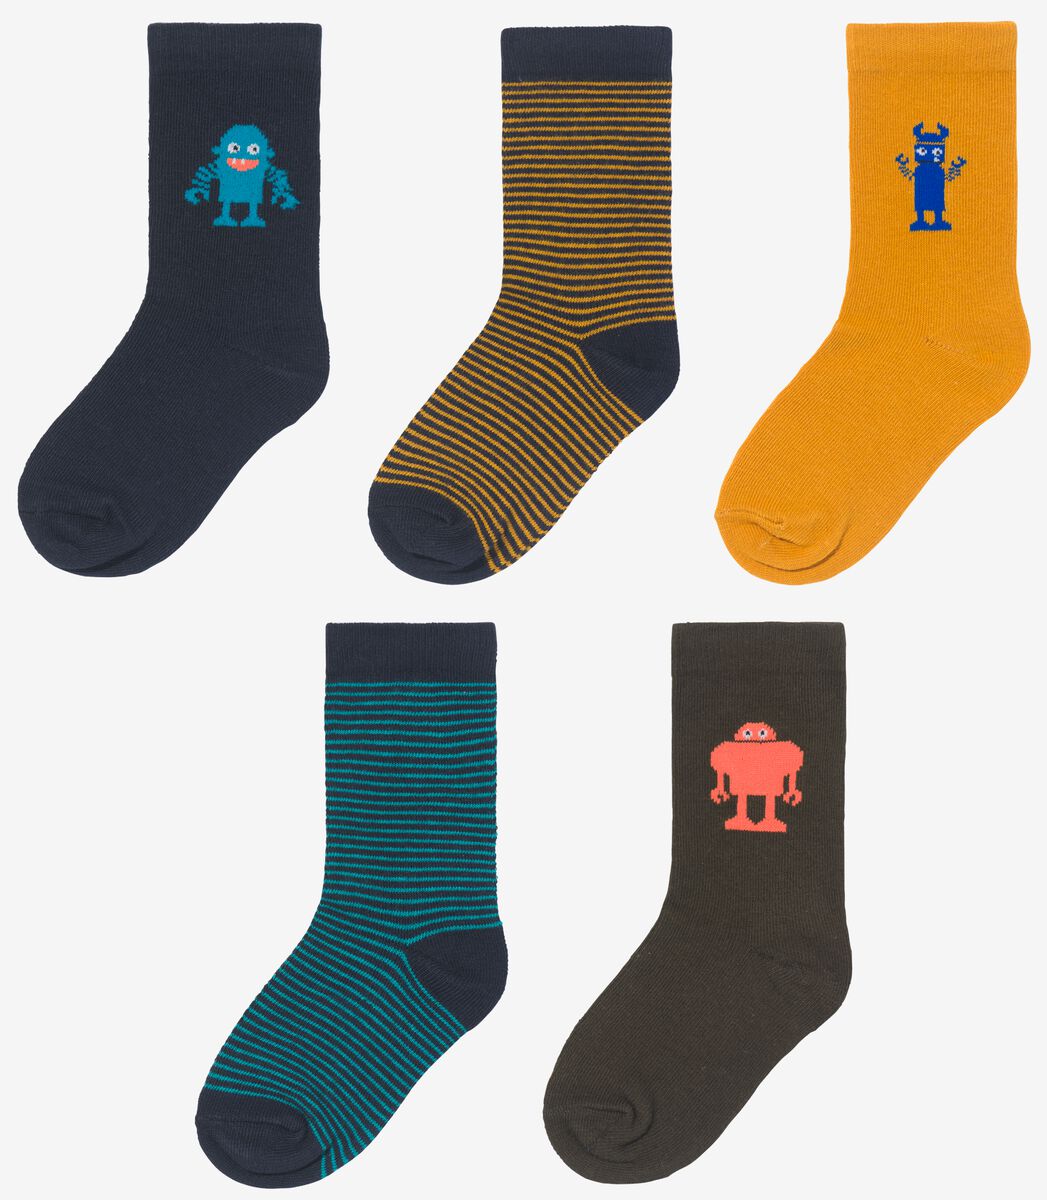 Kinder-Socken mit Baumwolle, 5 Paar blau 27/30 - 4360062 - HEMA